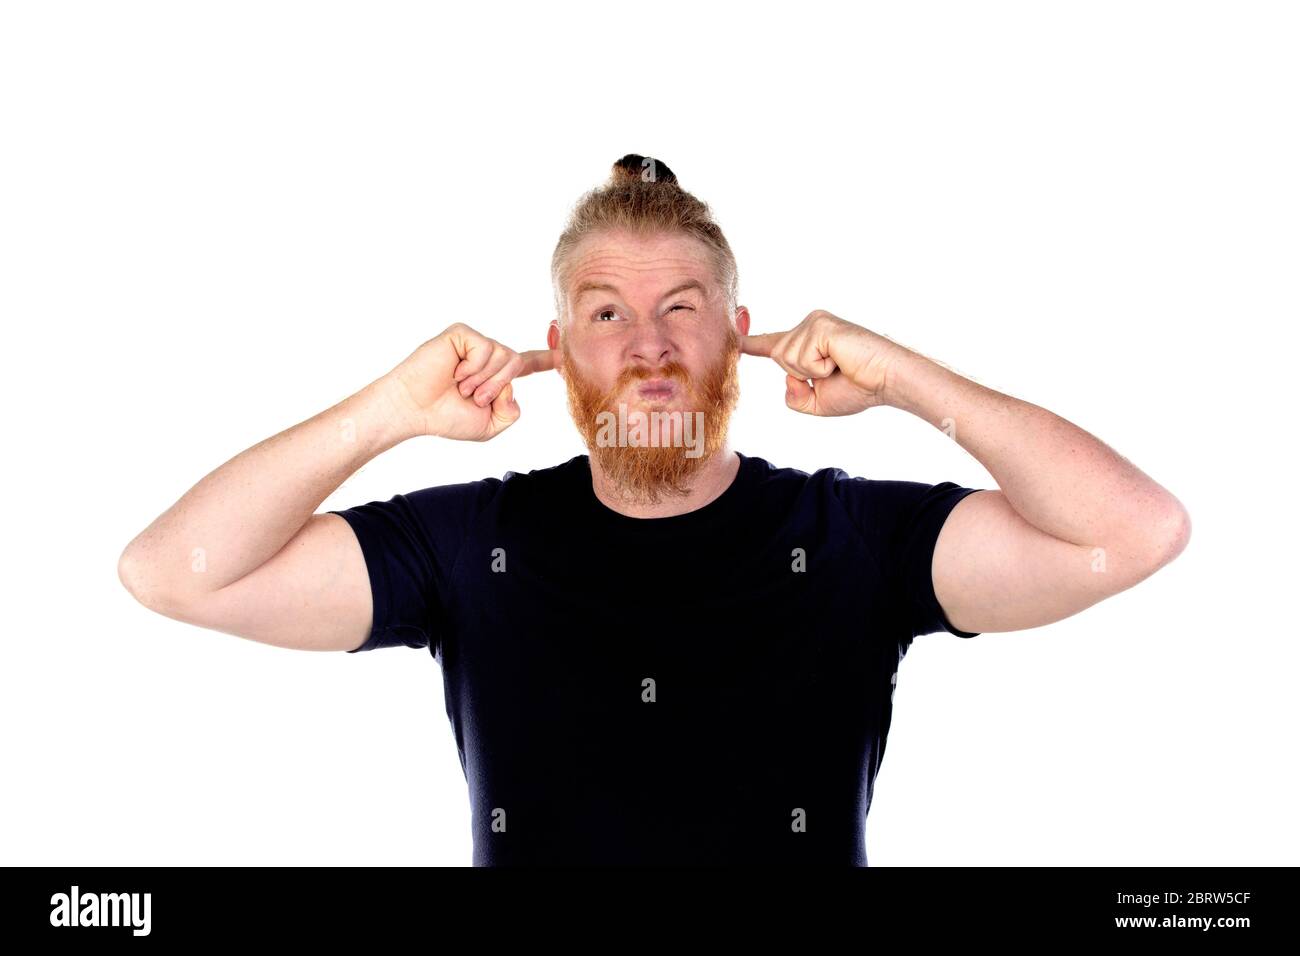 Uomo dai capelli rossi con barba lunga che ricopre le orecchie isolate su uno sfondo bianco Foto Stock